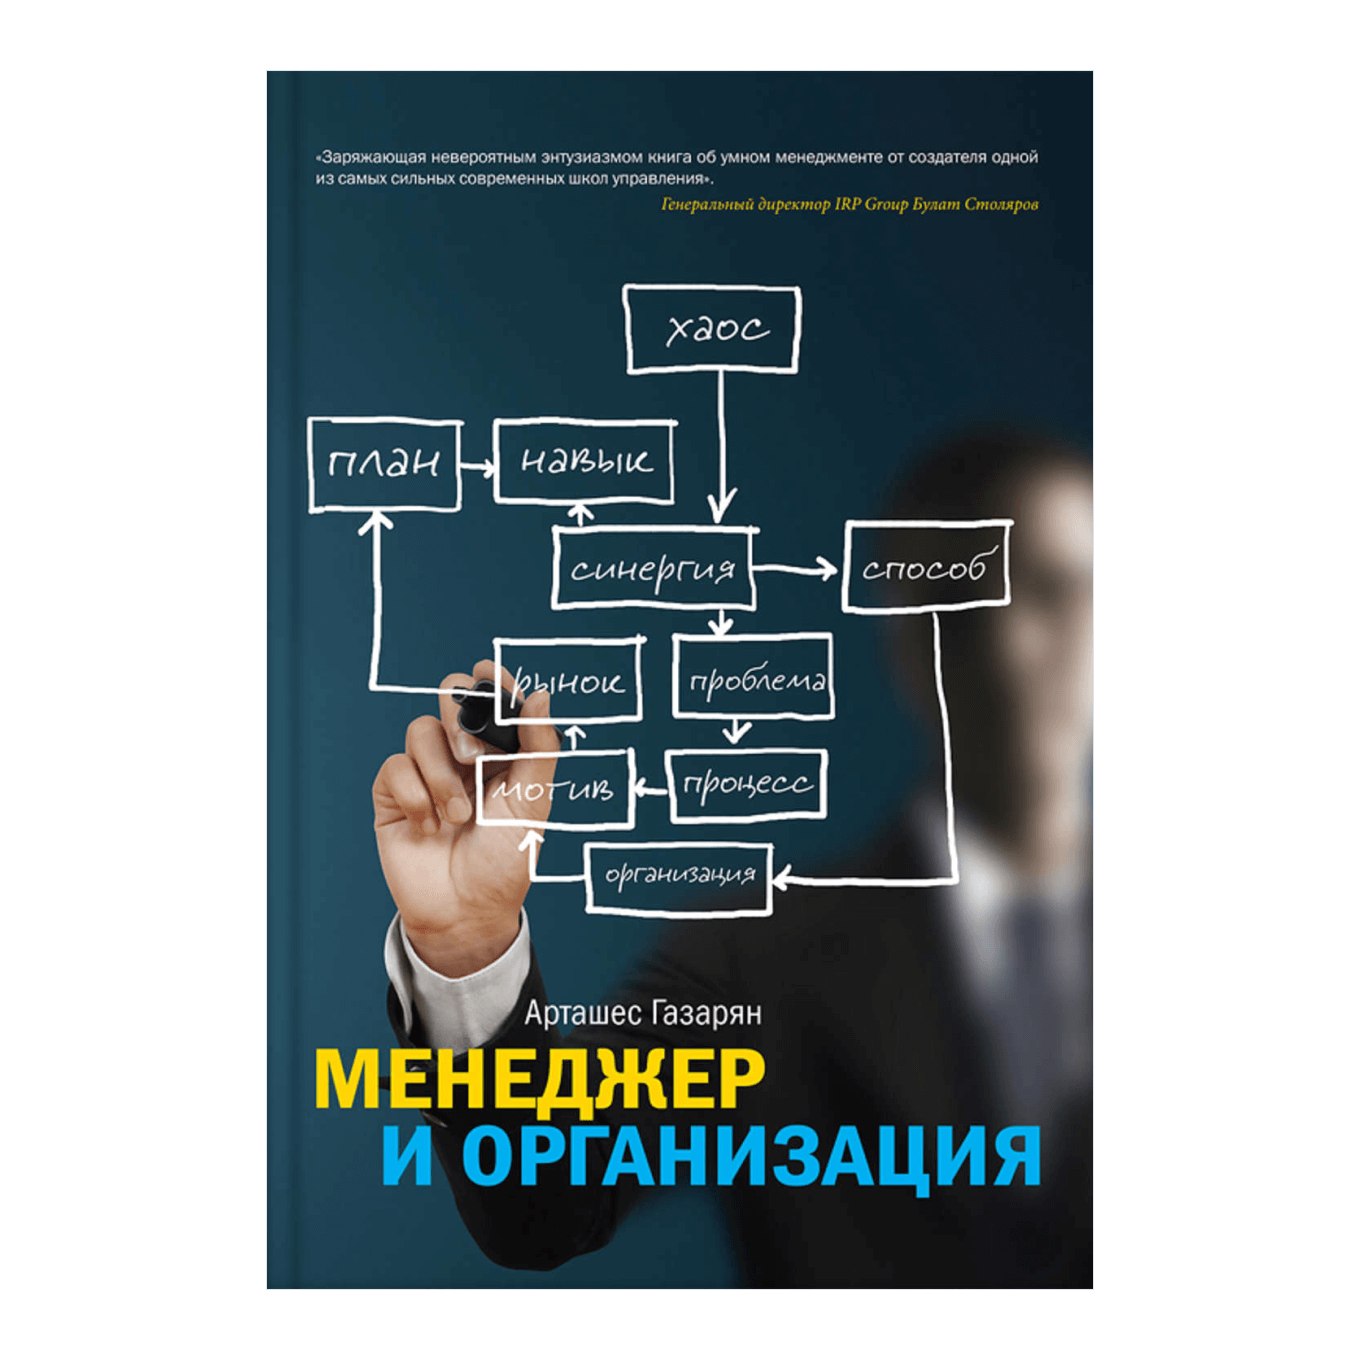 Книга Арташеса Газаряна «Менеджер и организация»